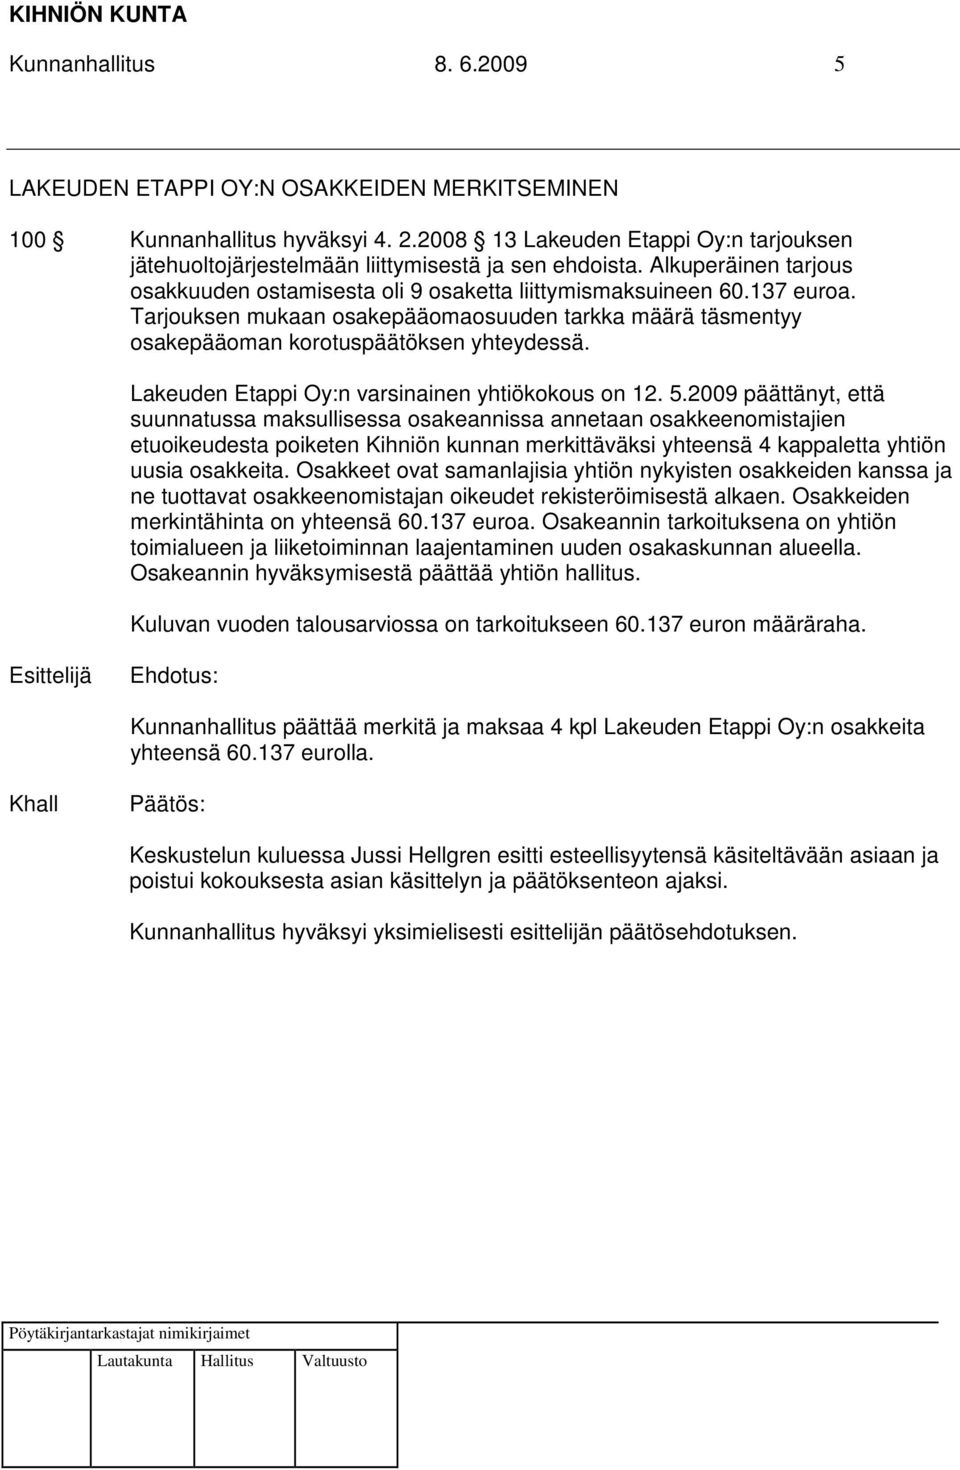 Lakeuden Etappi Oy:n varsinainen yhtiökokous on 12. 5.